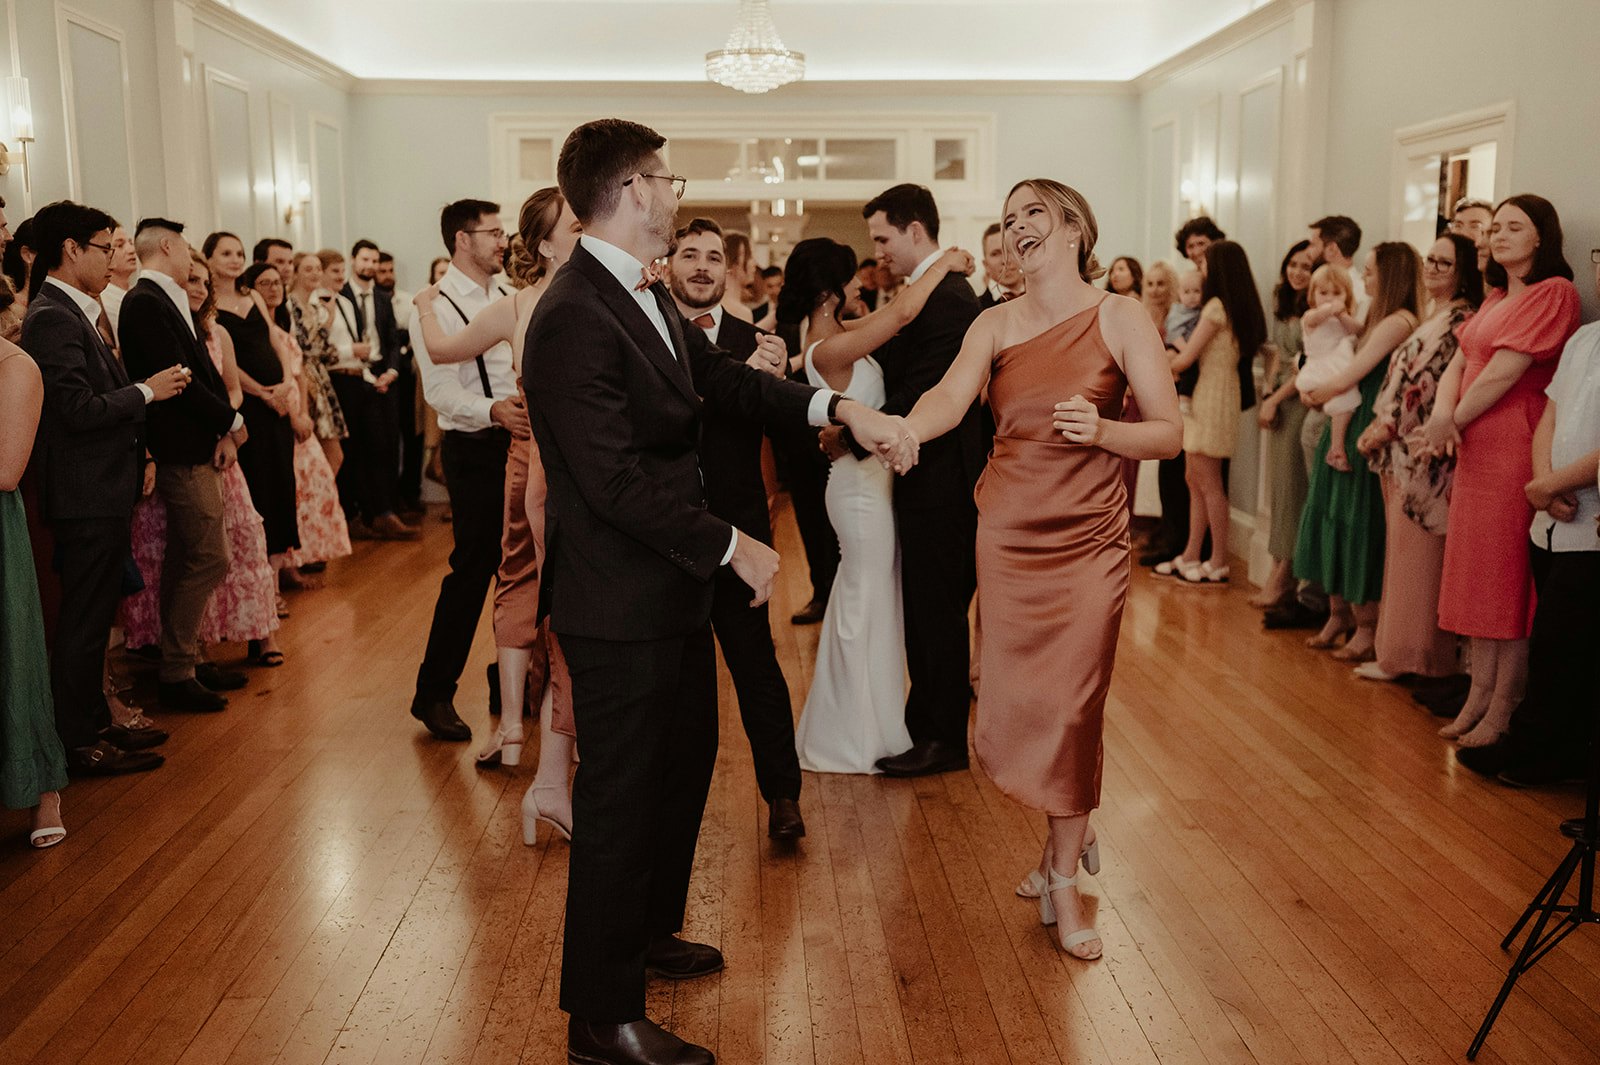 People on wedding dance floor